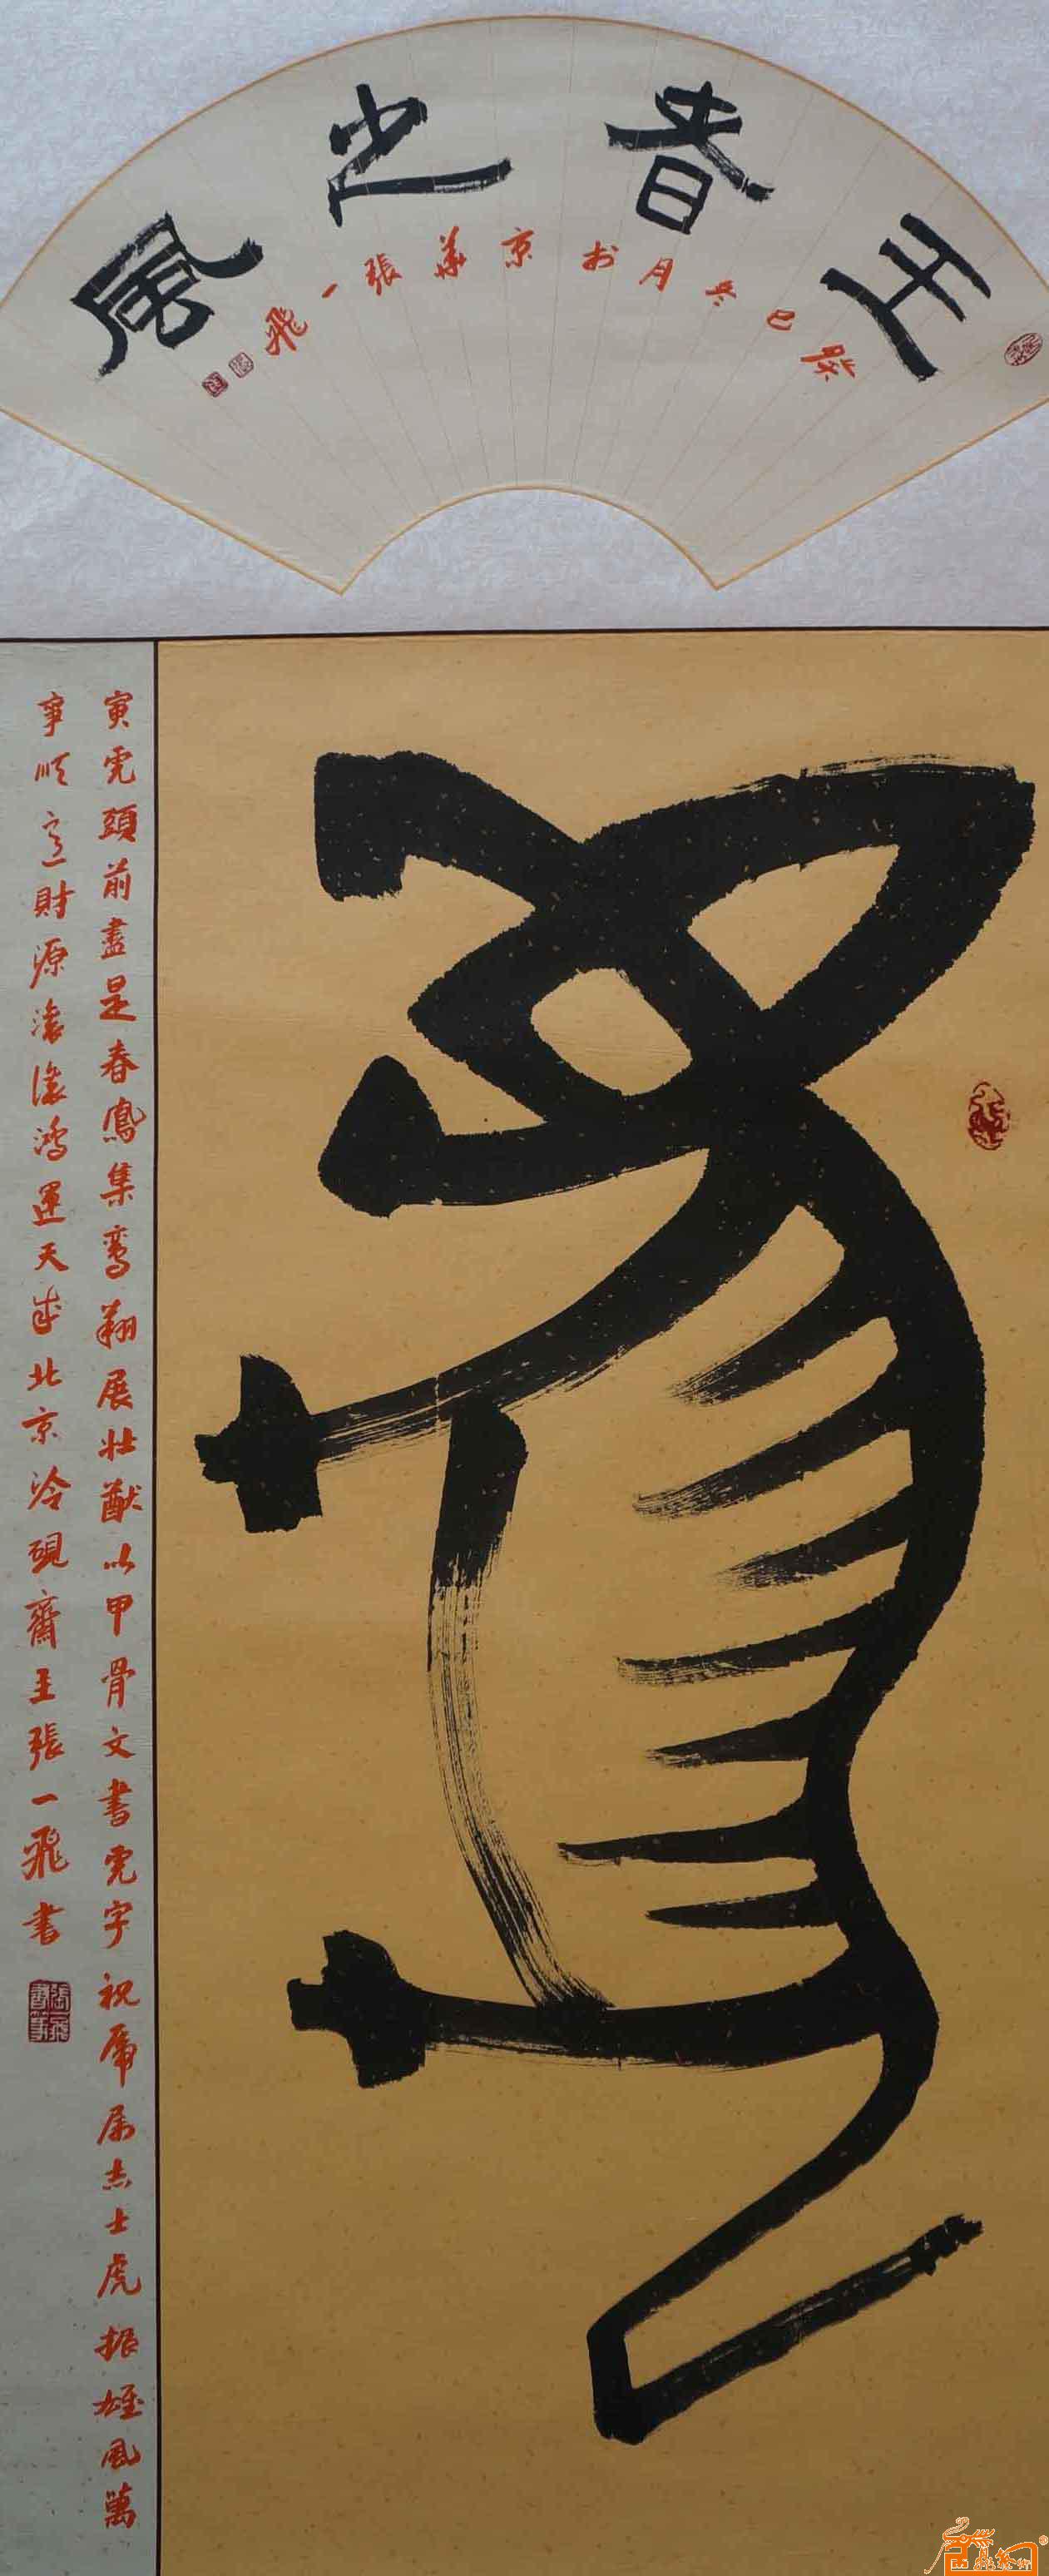 张一飞-甲骨文:虎-淘宝-名人字画-中国书画交易